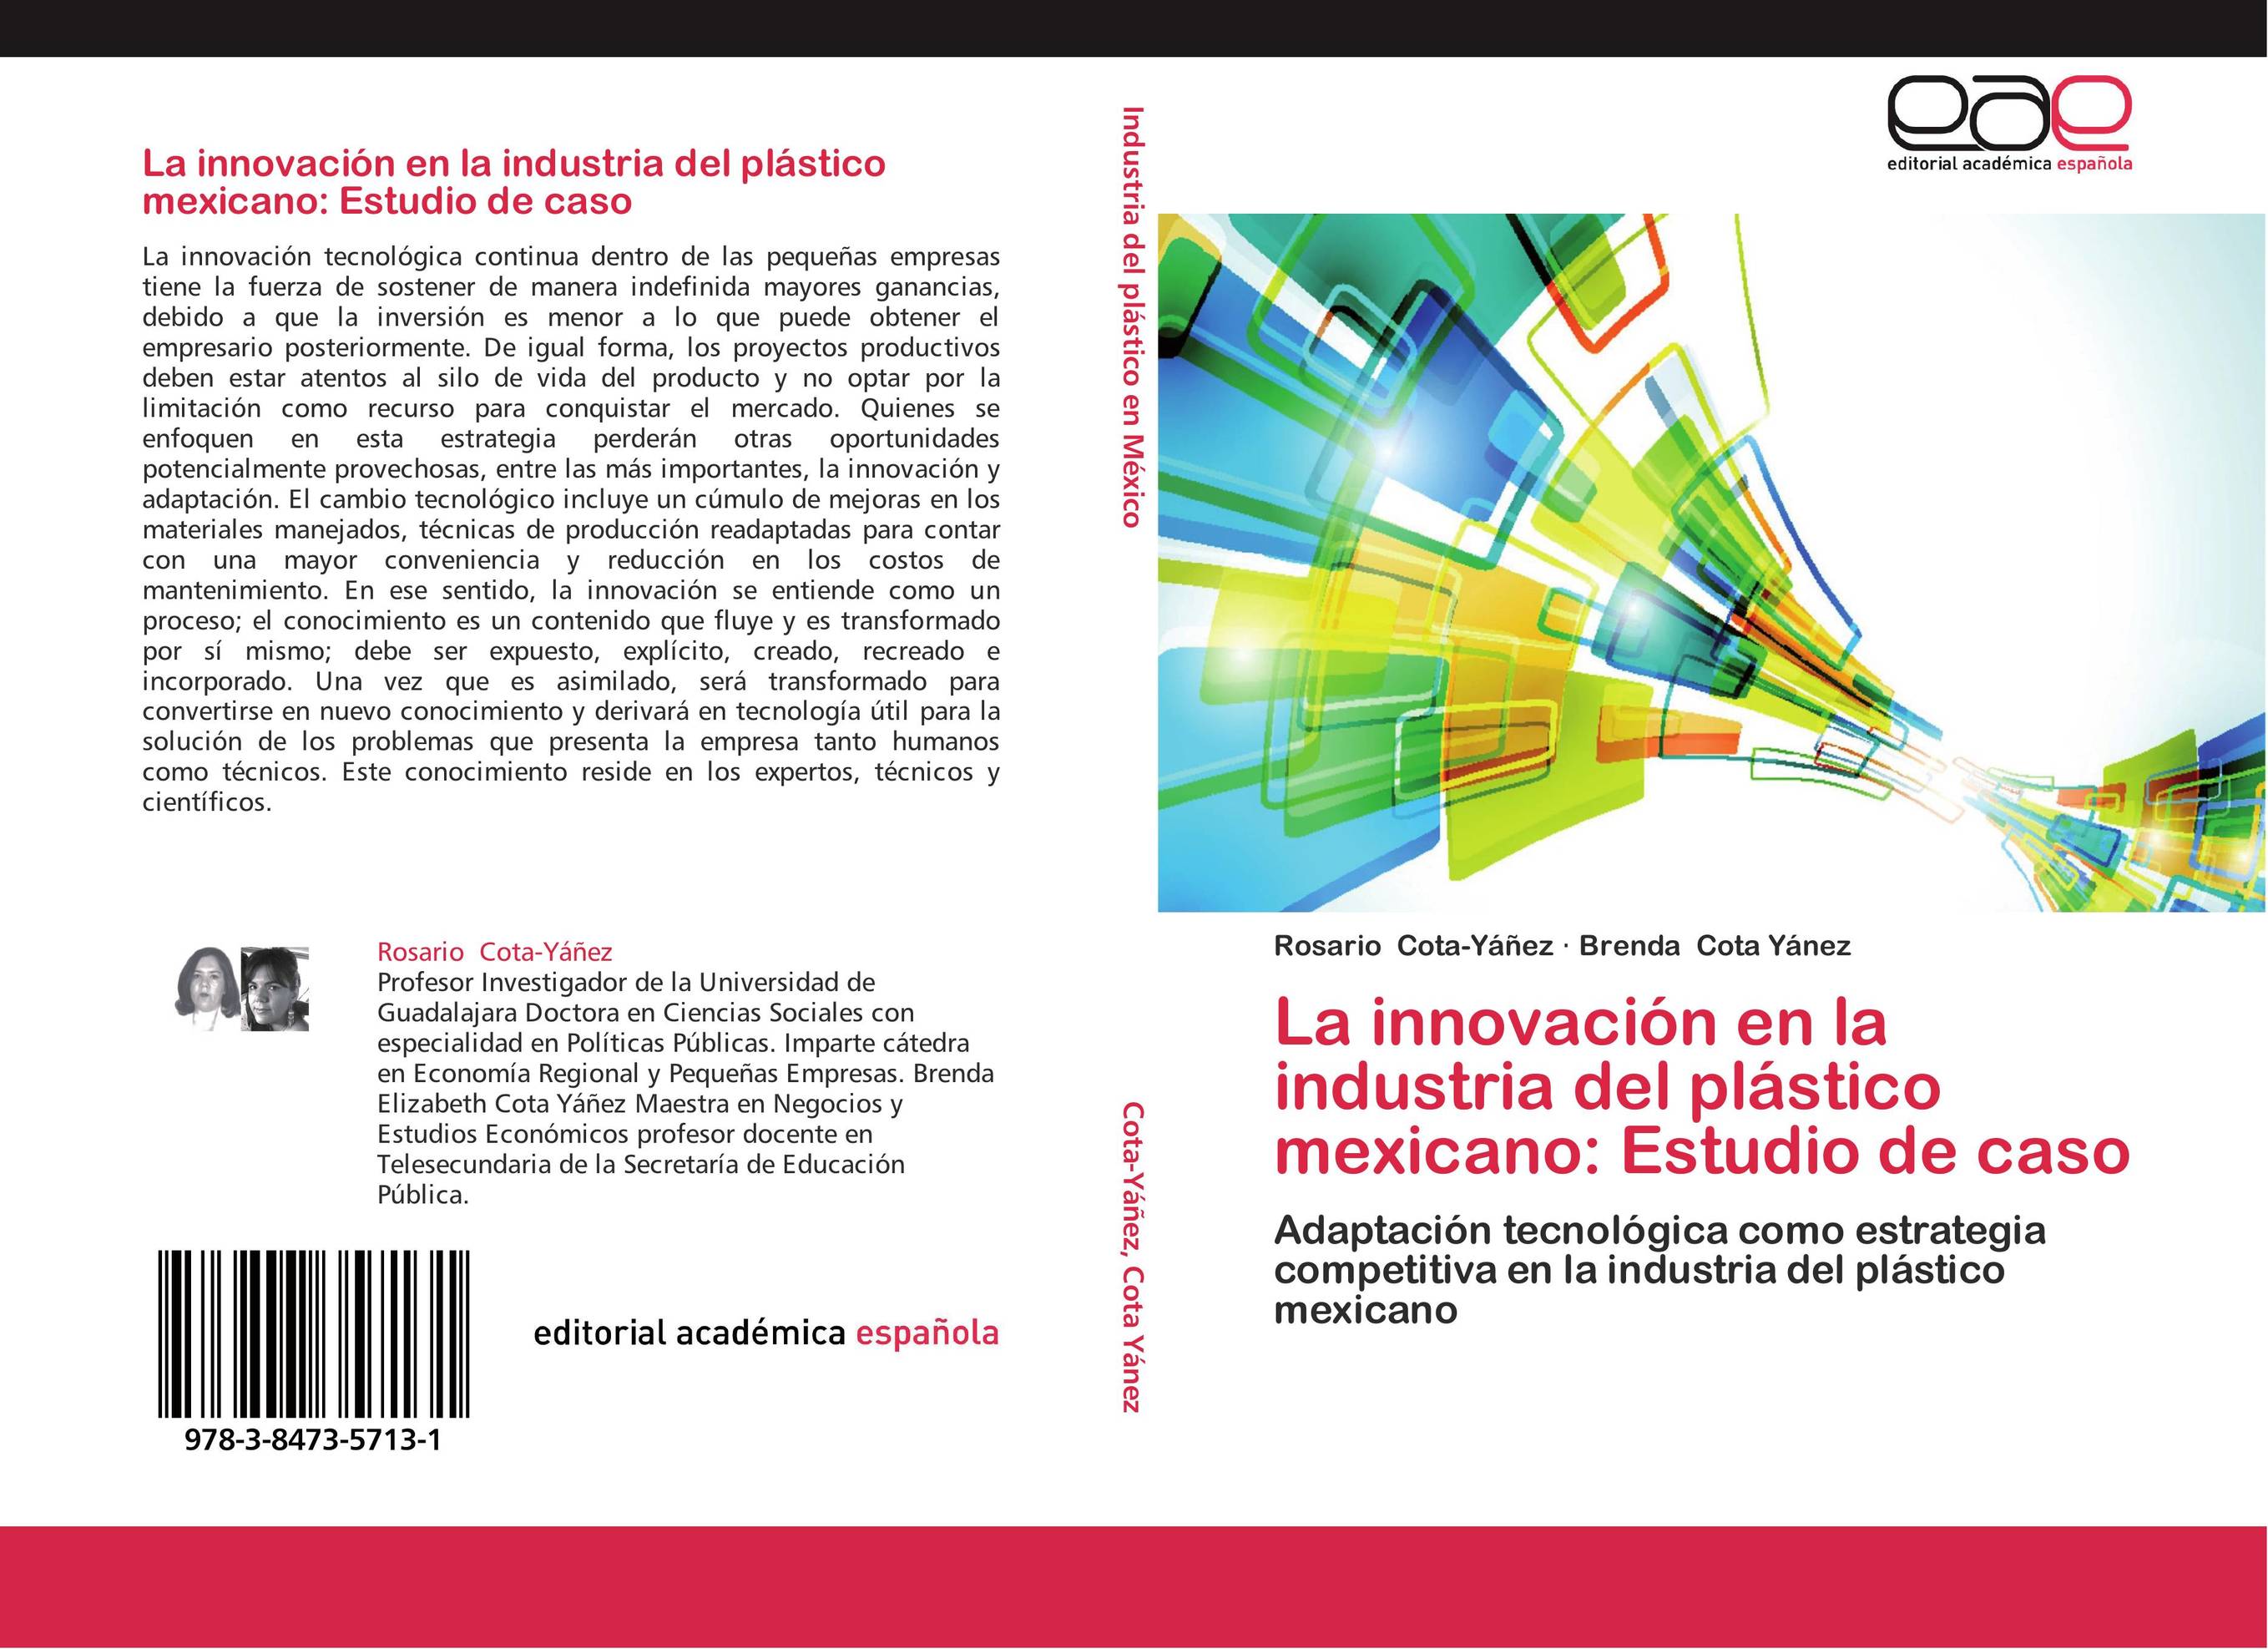 La innovación en la industria del plástico mexicano: Estudio de caso